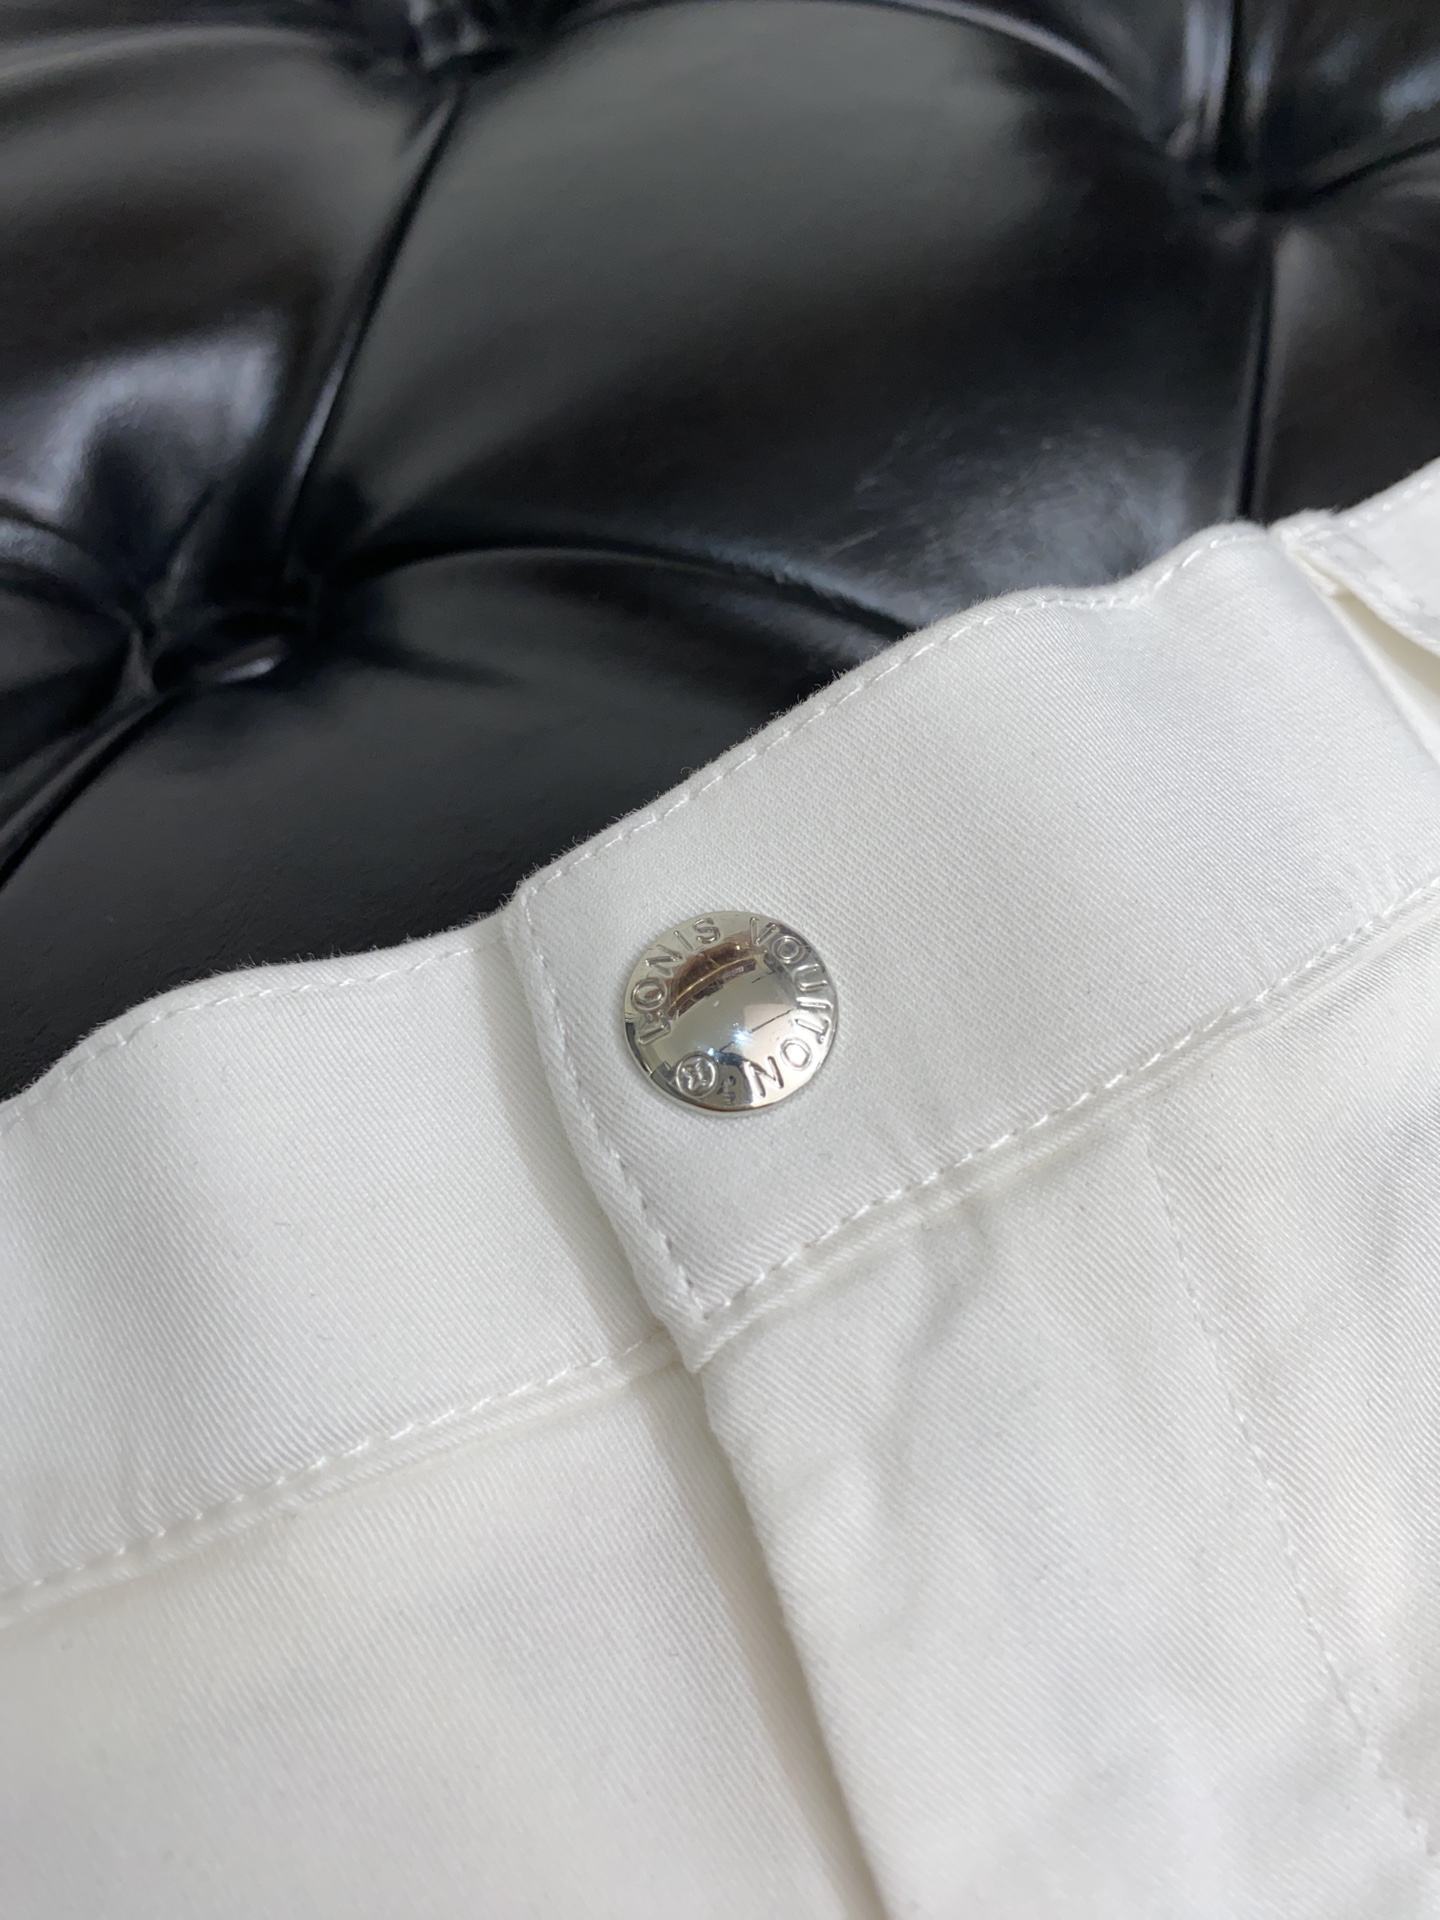 v路易威登贸易公司渠道订单顶级4袋休闲短裤高端限量版极品牛货白金级完美品相定制专柜定单面料直接入专柜性质